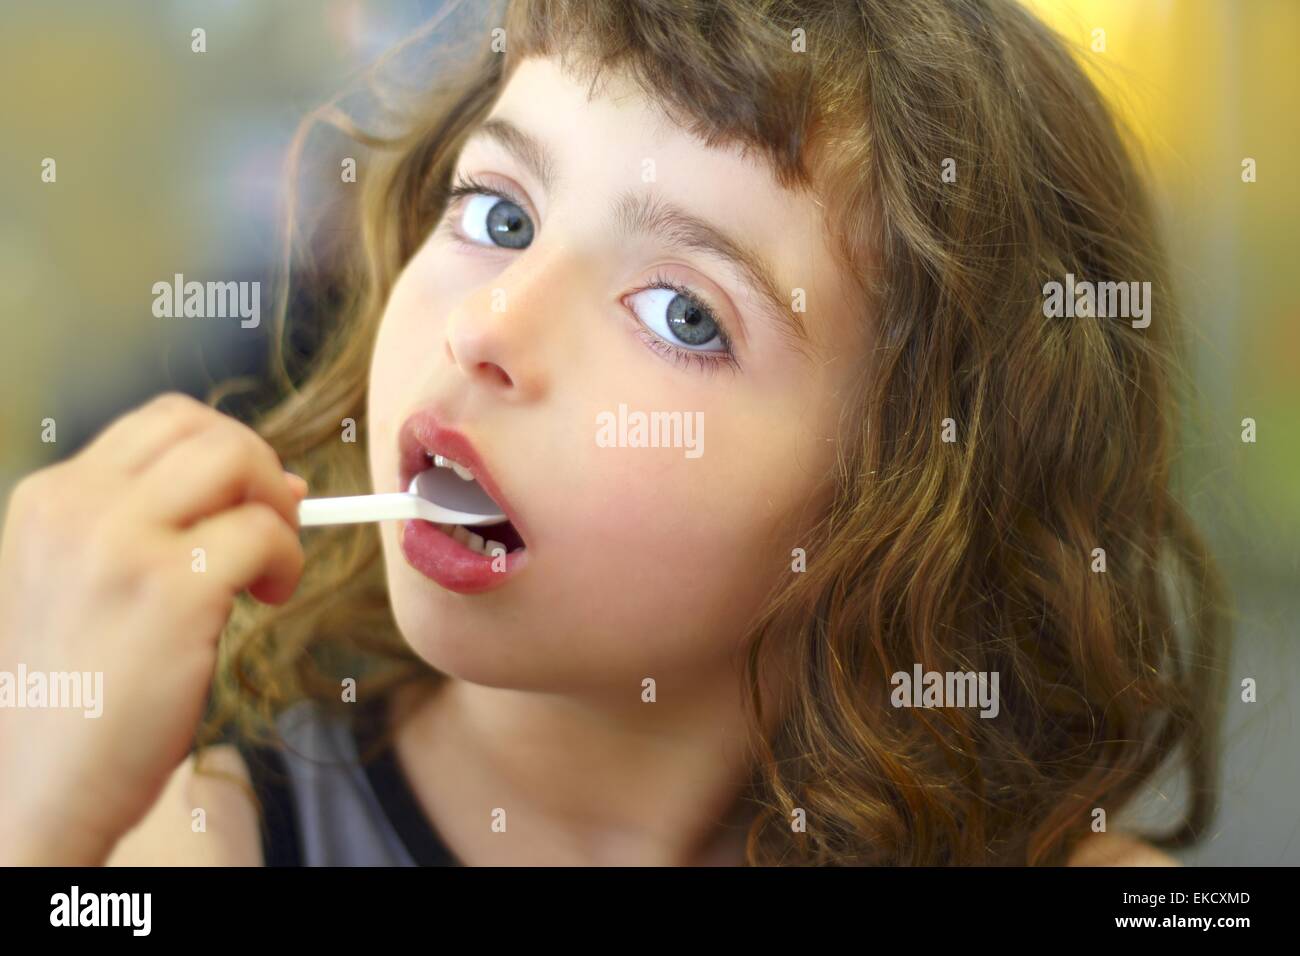 https://c8.alamy.com/comp/EKCXMD/brunette-little-girl-eating-playing-plastic-spoon-EKCXMD.jpg